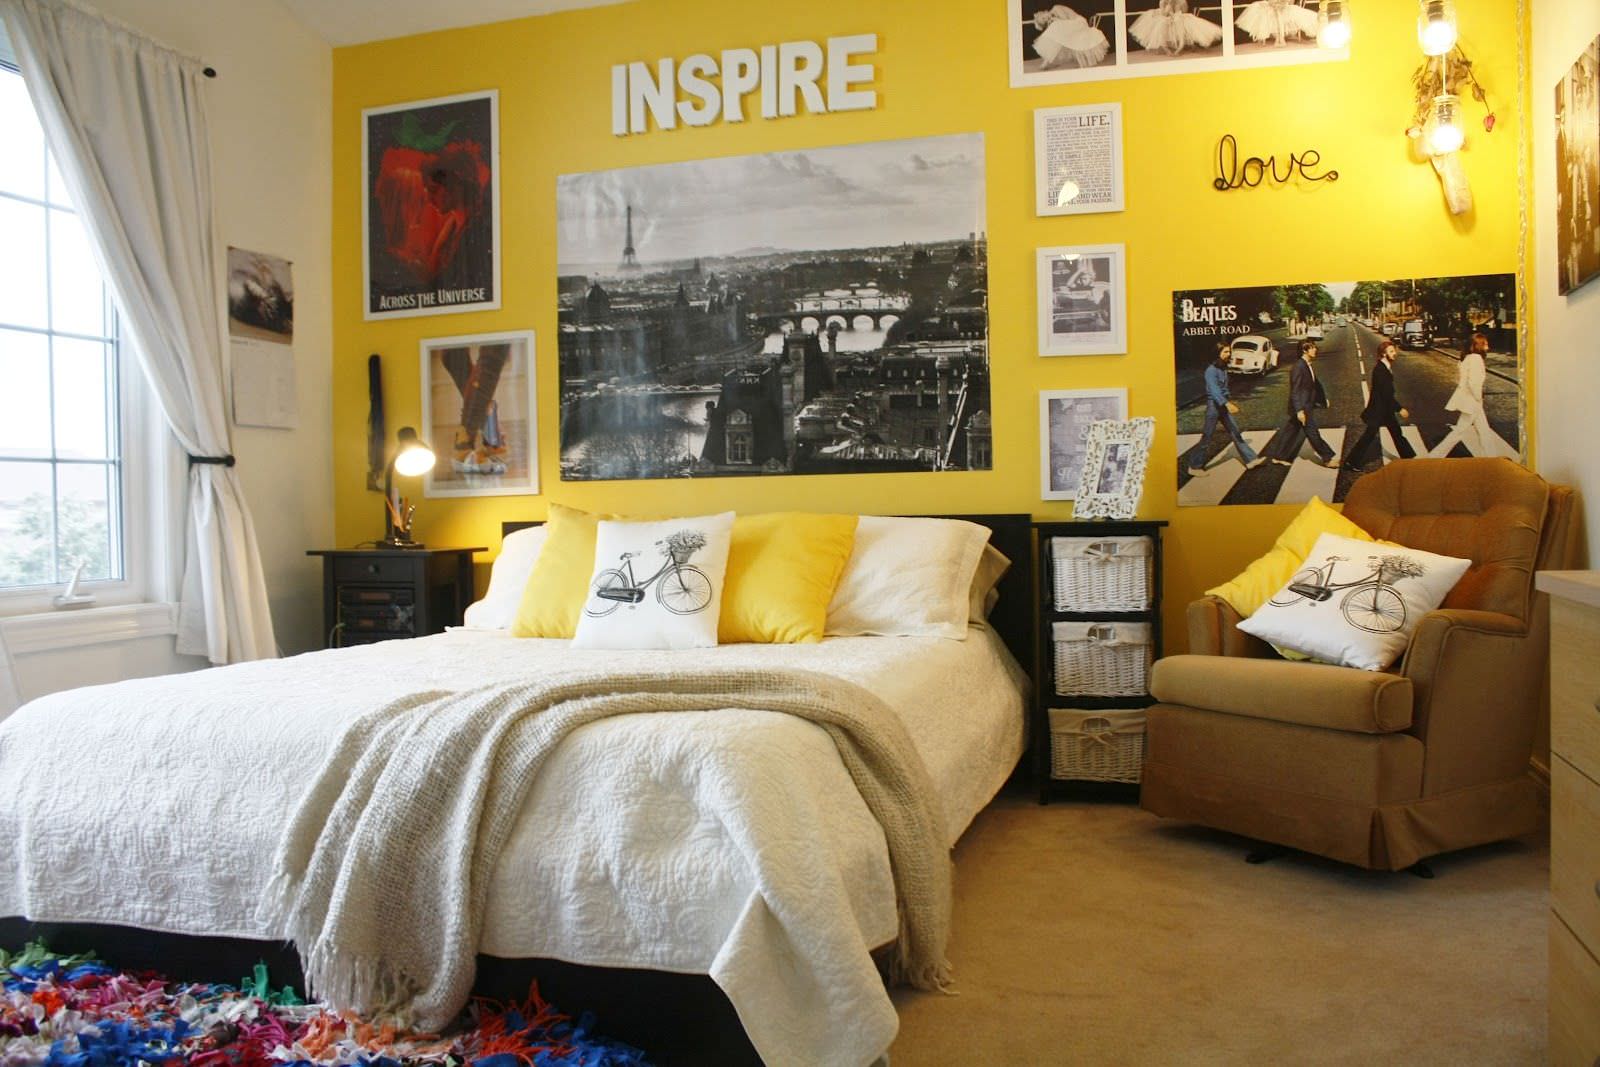 Mẫu thiết kế phòng ngủ đơn giản với màu sơn tường là màu vàng nổi bật kết hợp tranh treo tường phong cách vintage